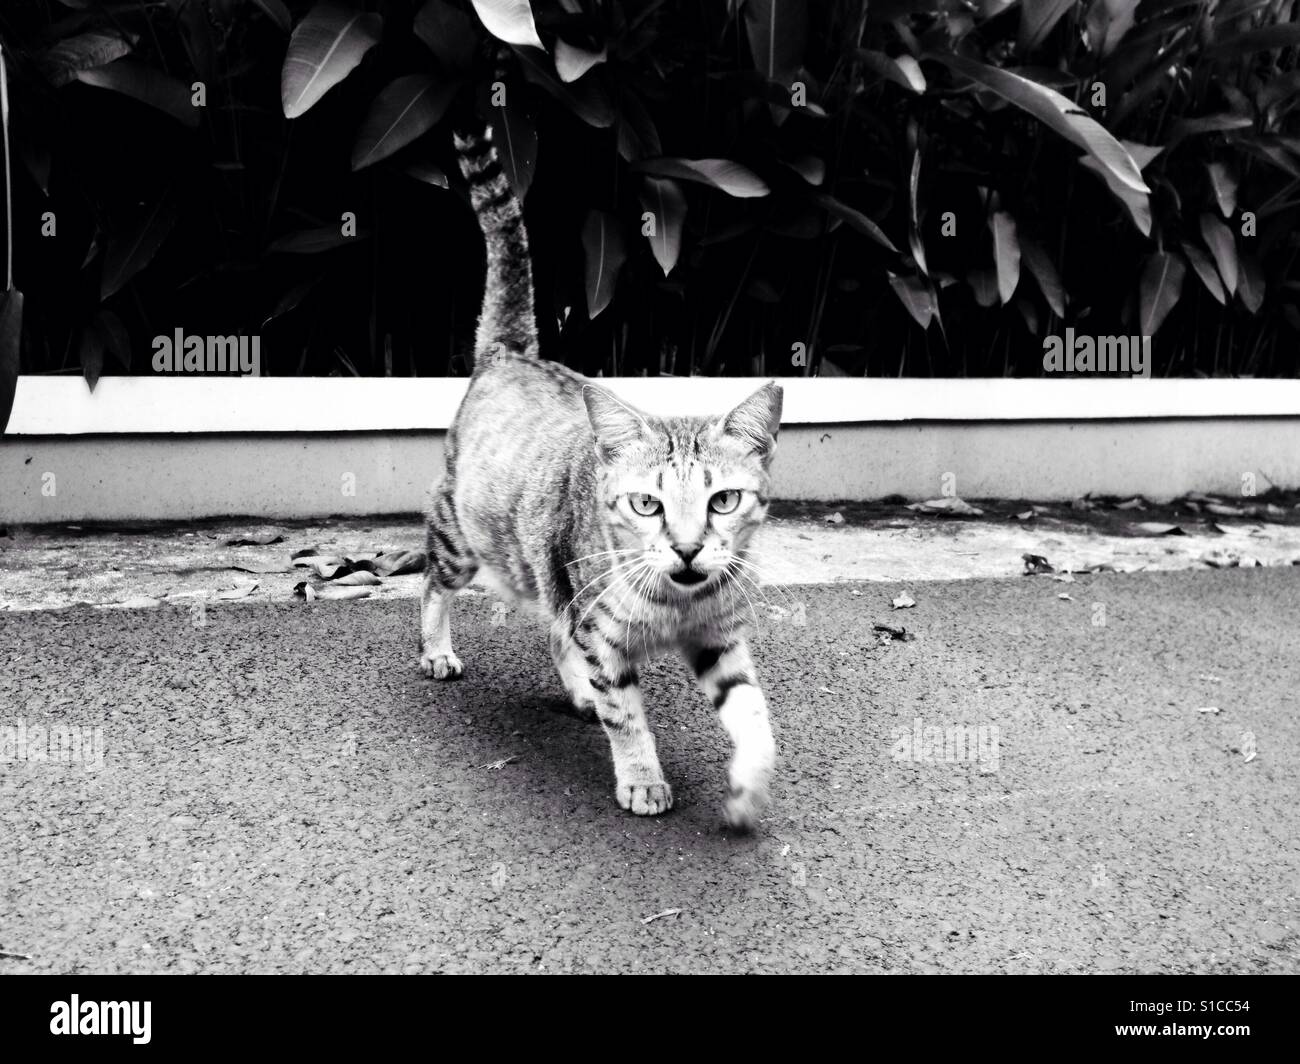 Walking Wild Cat on the Street Stock Photo